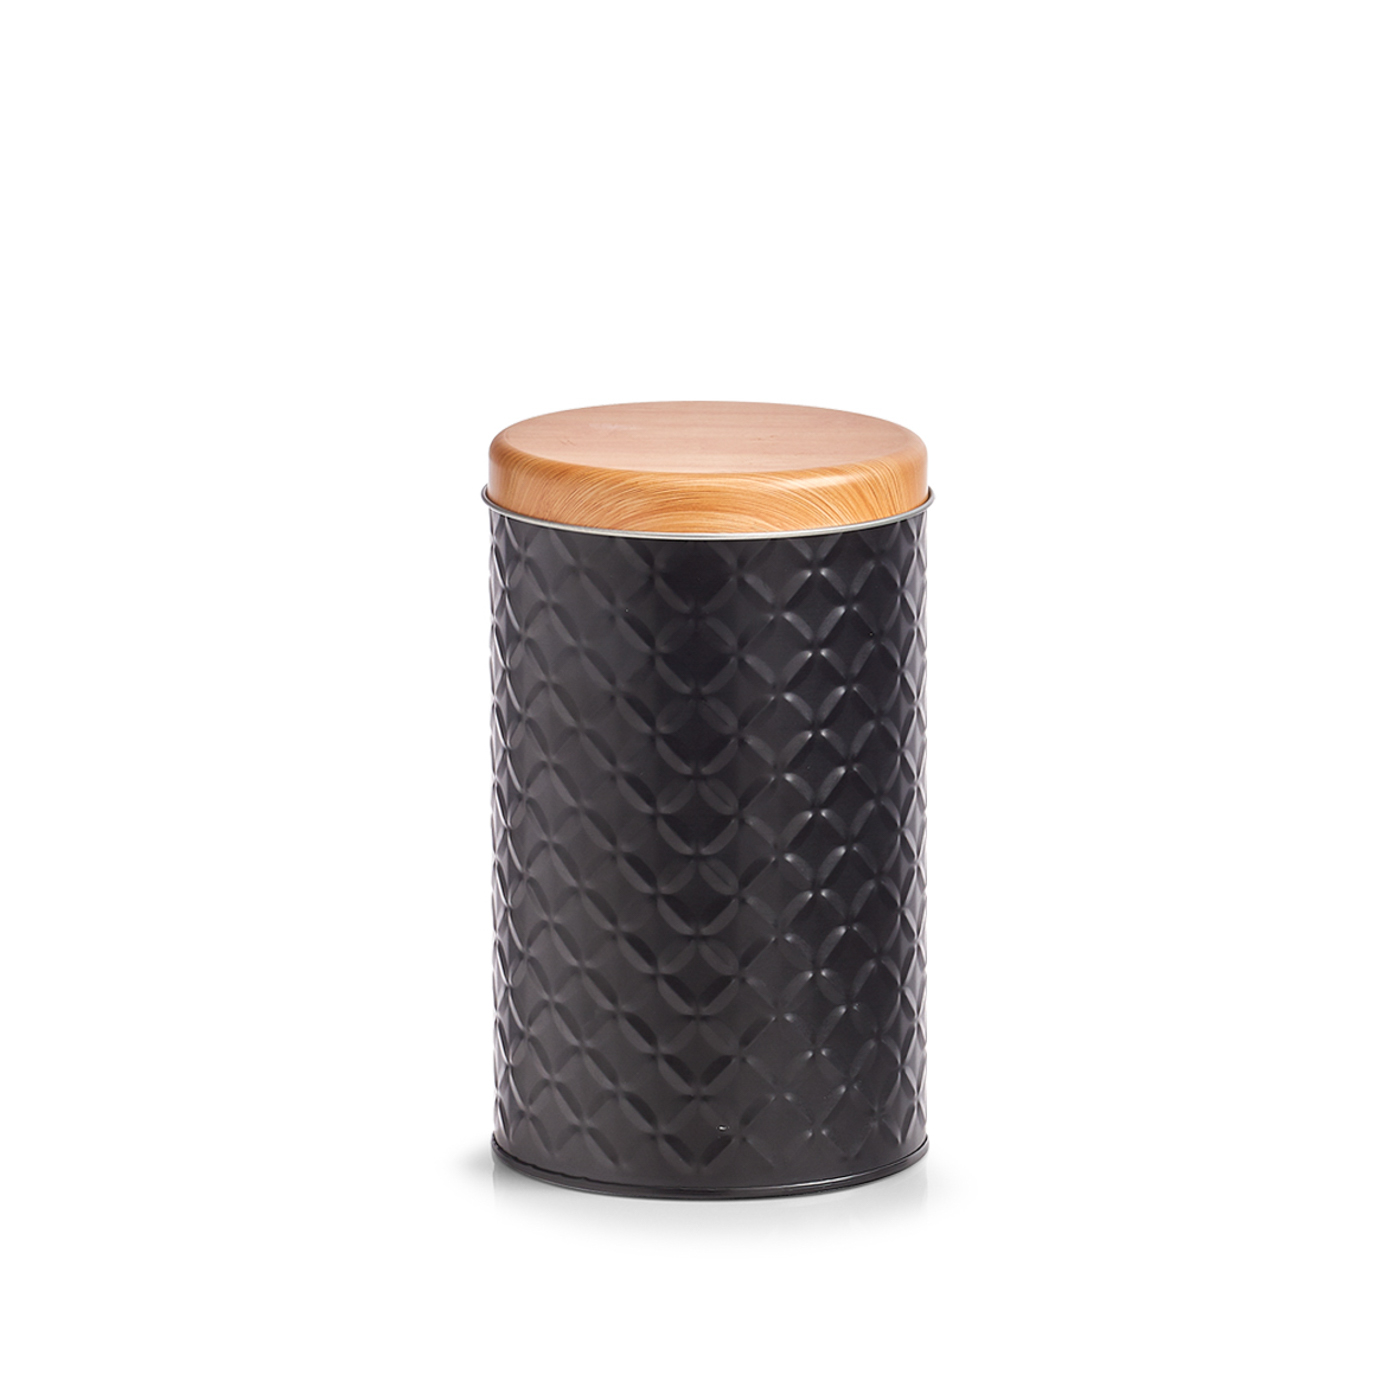 Dose, Metall, Ø10,7x18 cm. Farbe: schwarz. Fassungsvermögen: 1370 ml. Die aufwendige Oberflächenstruktur der Vorratsdose ist dem